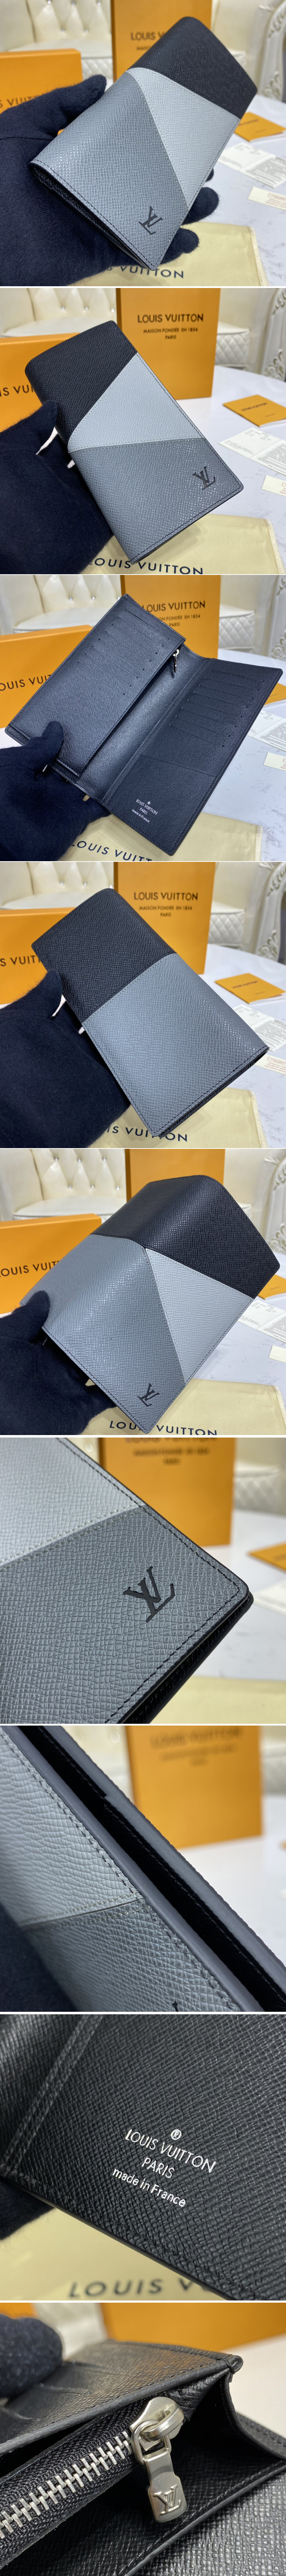 Replica Louis Vuitton M30713 LV Brazza wallet in Gray monochrome Taiga leather